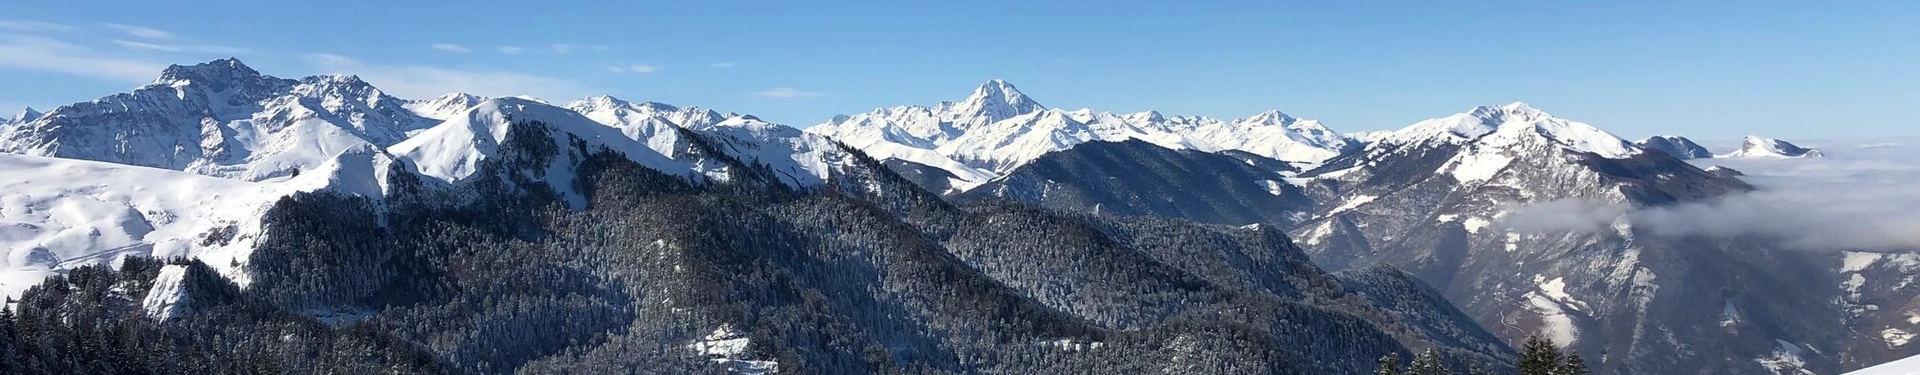 Pyrénées aventure : séjour hiver multiactivité en famille | Nature Occitane